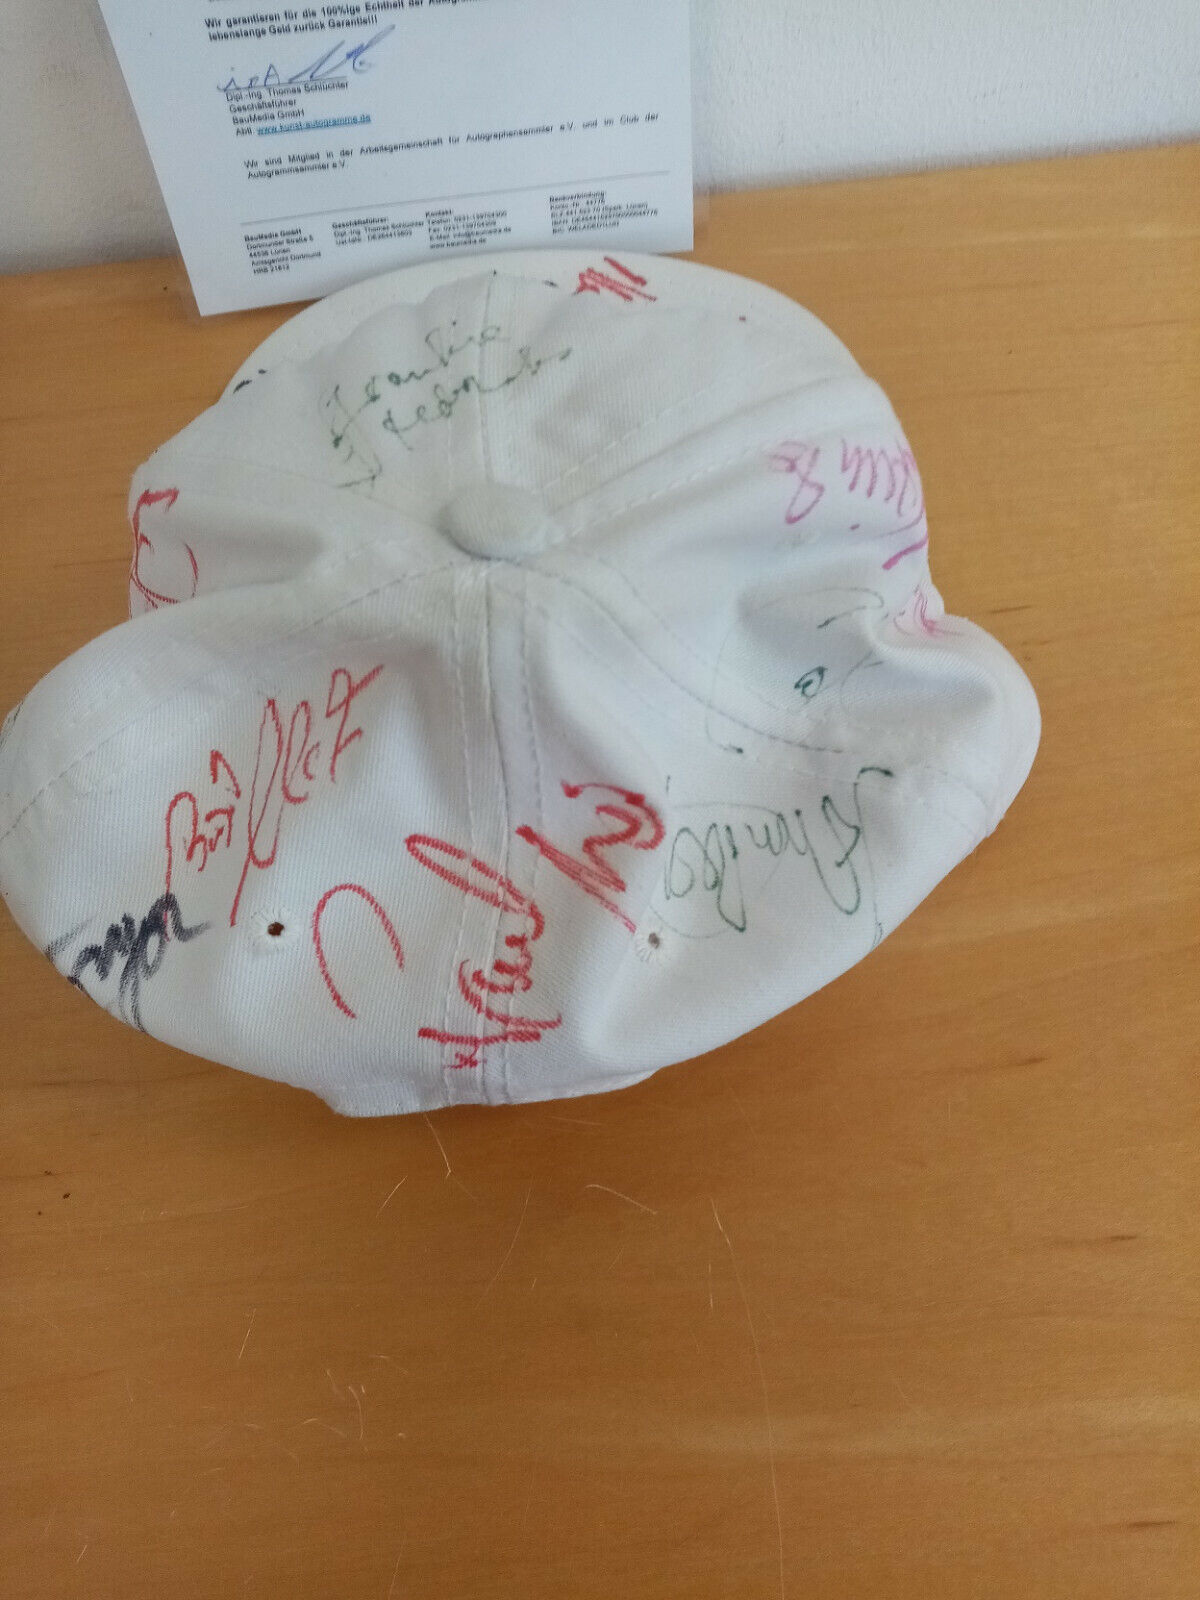 Cap signiert von Teilnehmern der Leichtathletik Weltmeisterschaft 1993 Stuttgart